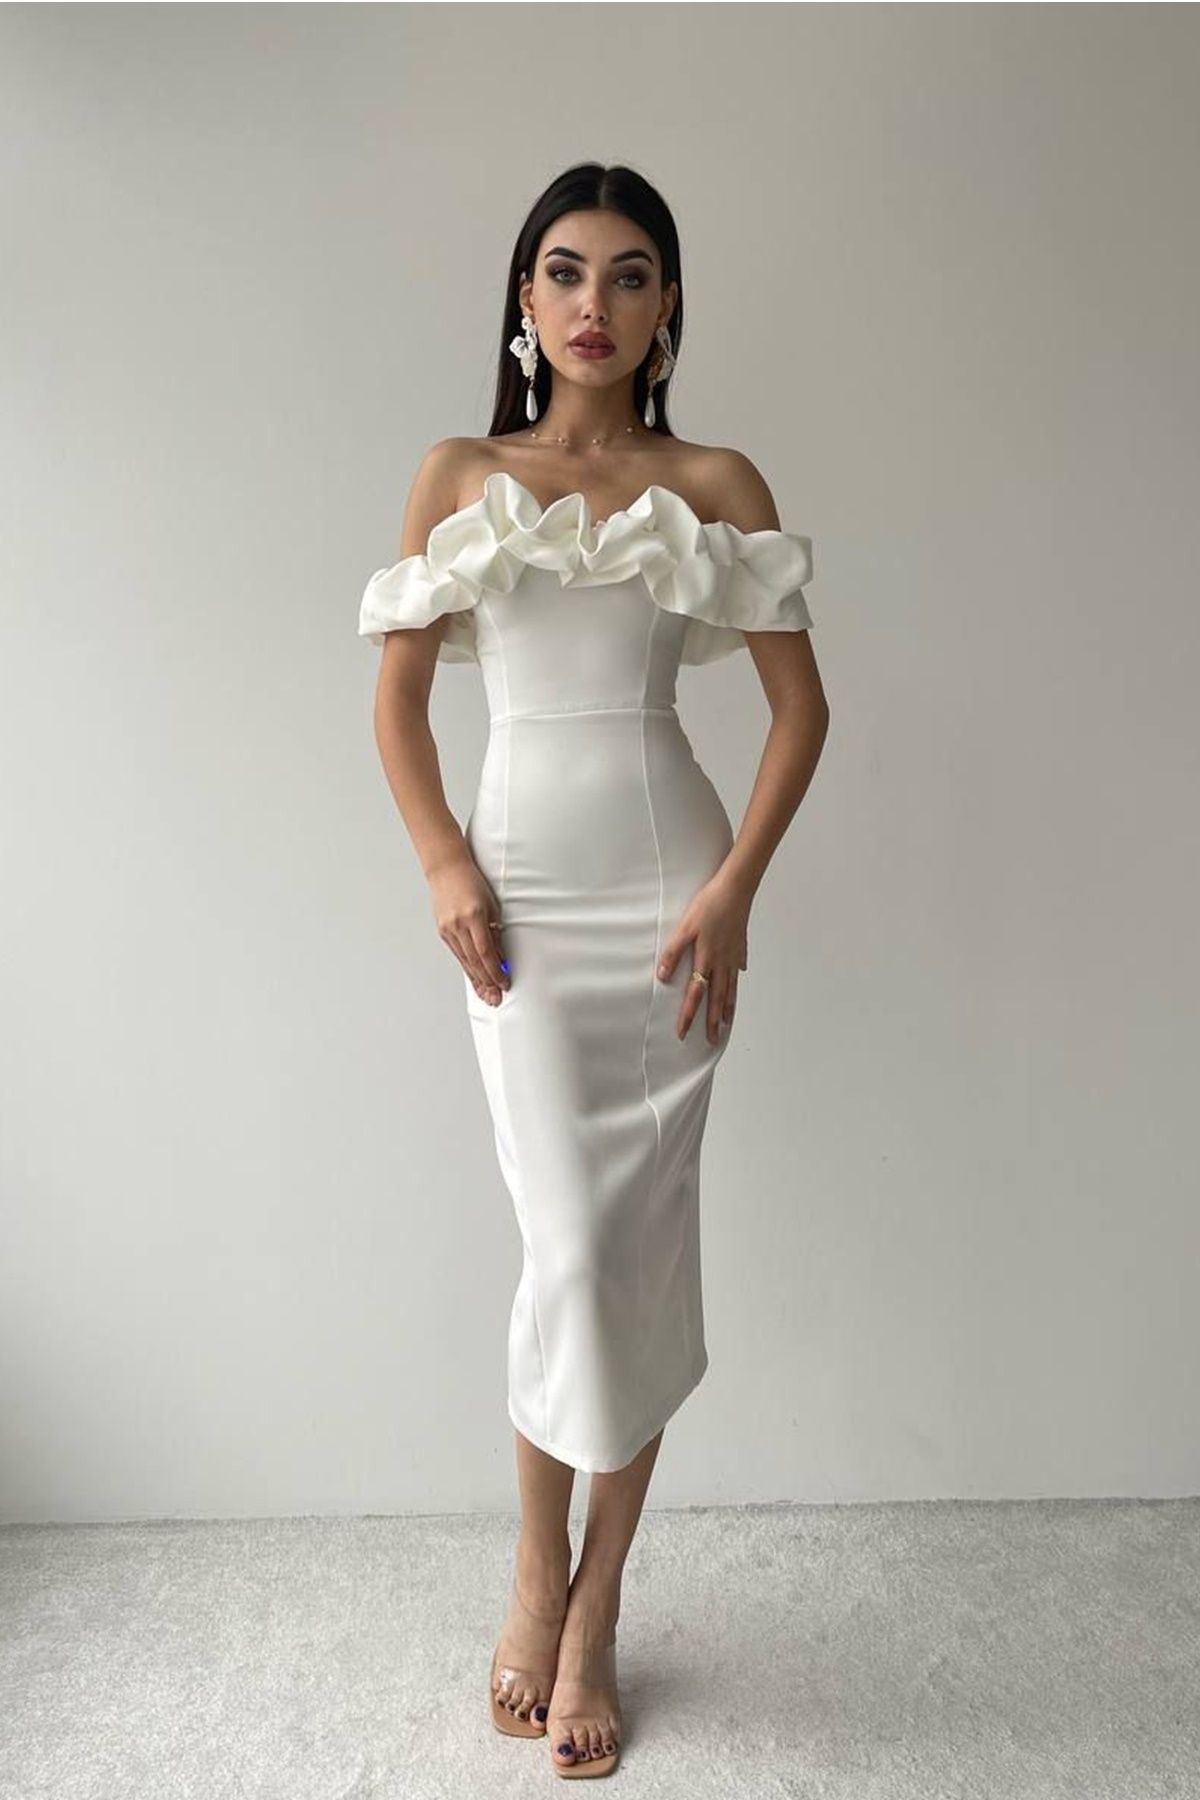 lovebox Kadın Straplez Yaka Düşük Omuz ve Yırtmaç Tasarımlı Midi Kalem Beyaz Abiye Elbise 219